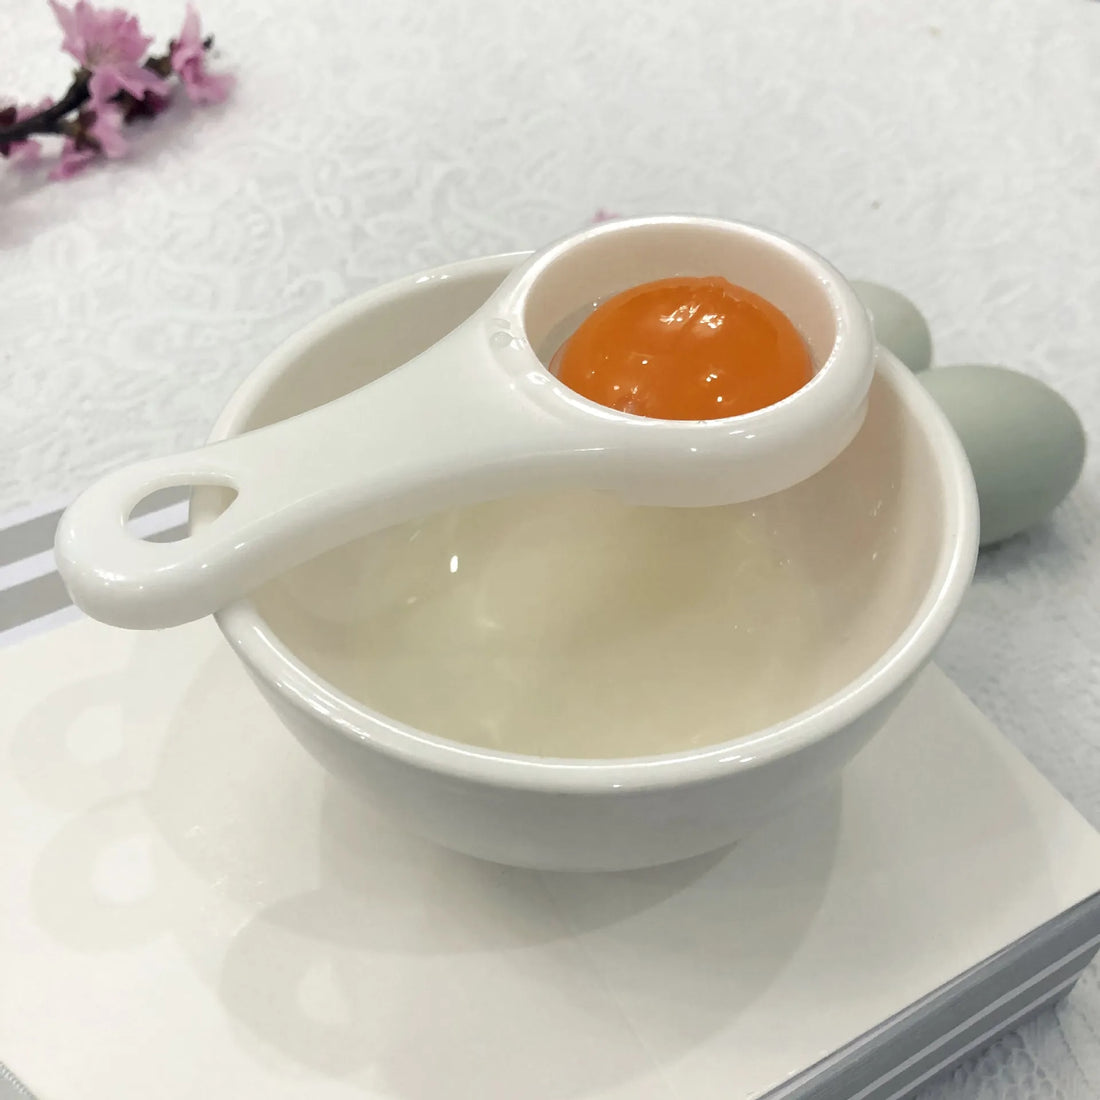 Egg White Separator Tool: Plastic Yolk Filter Gadget for Kitchen